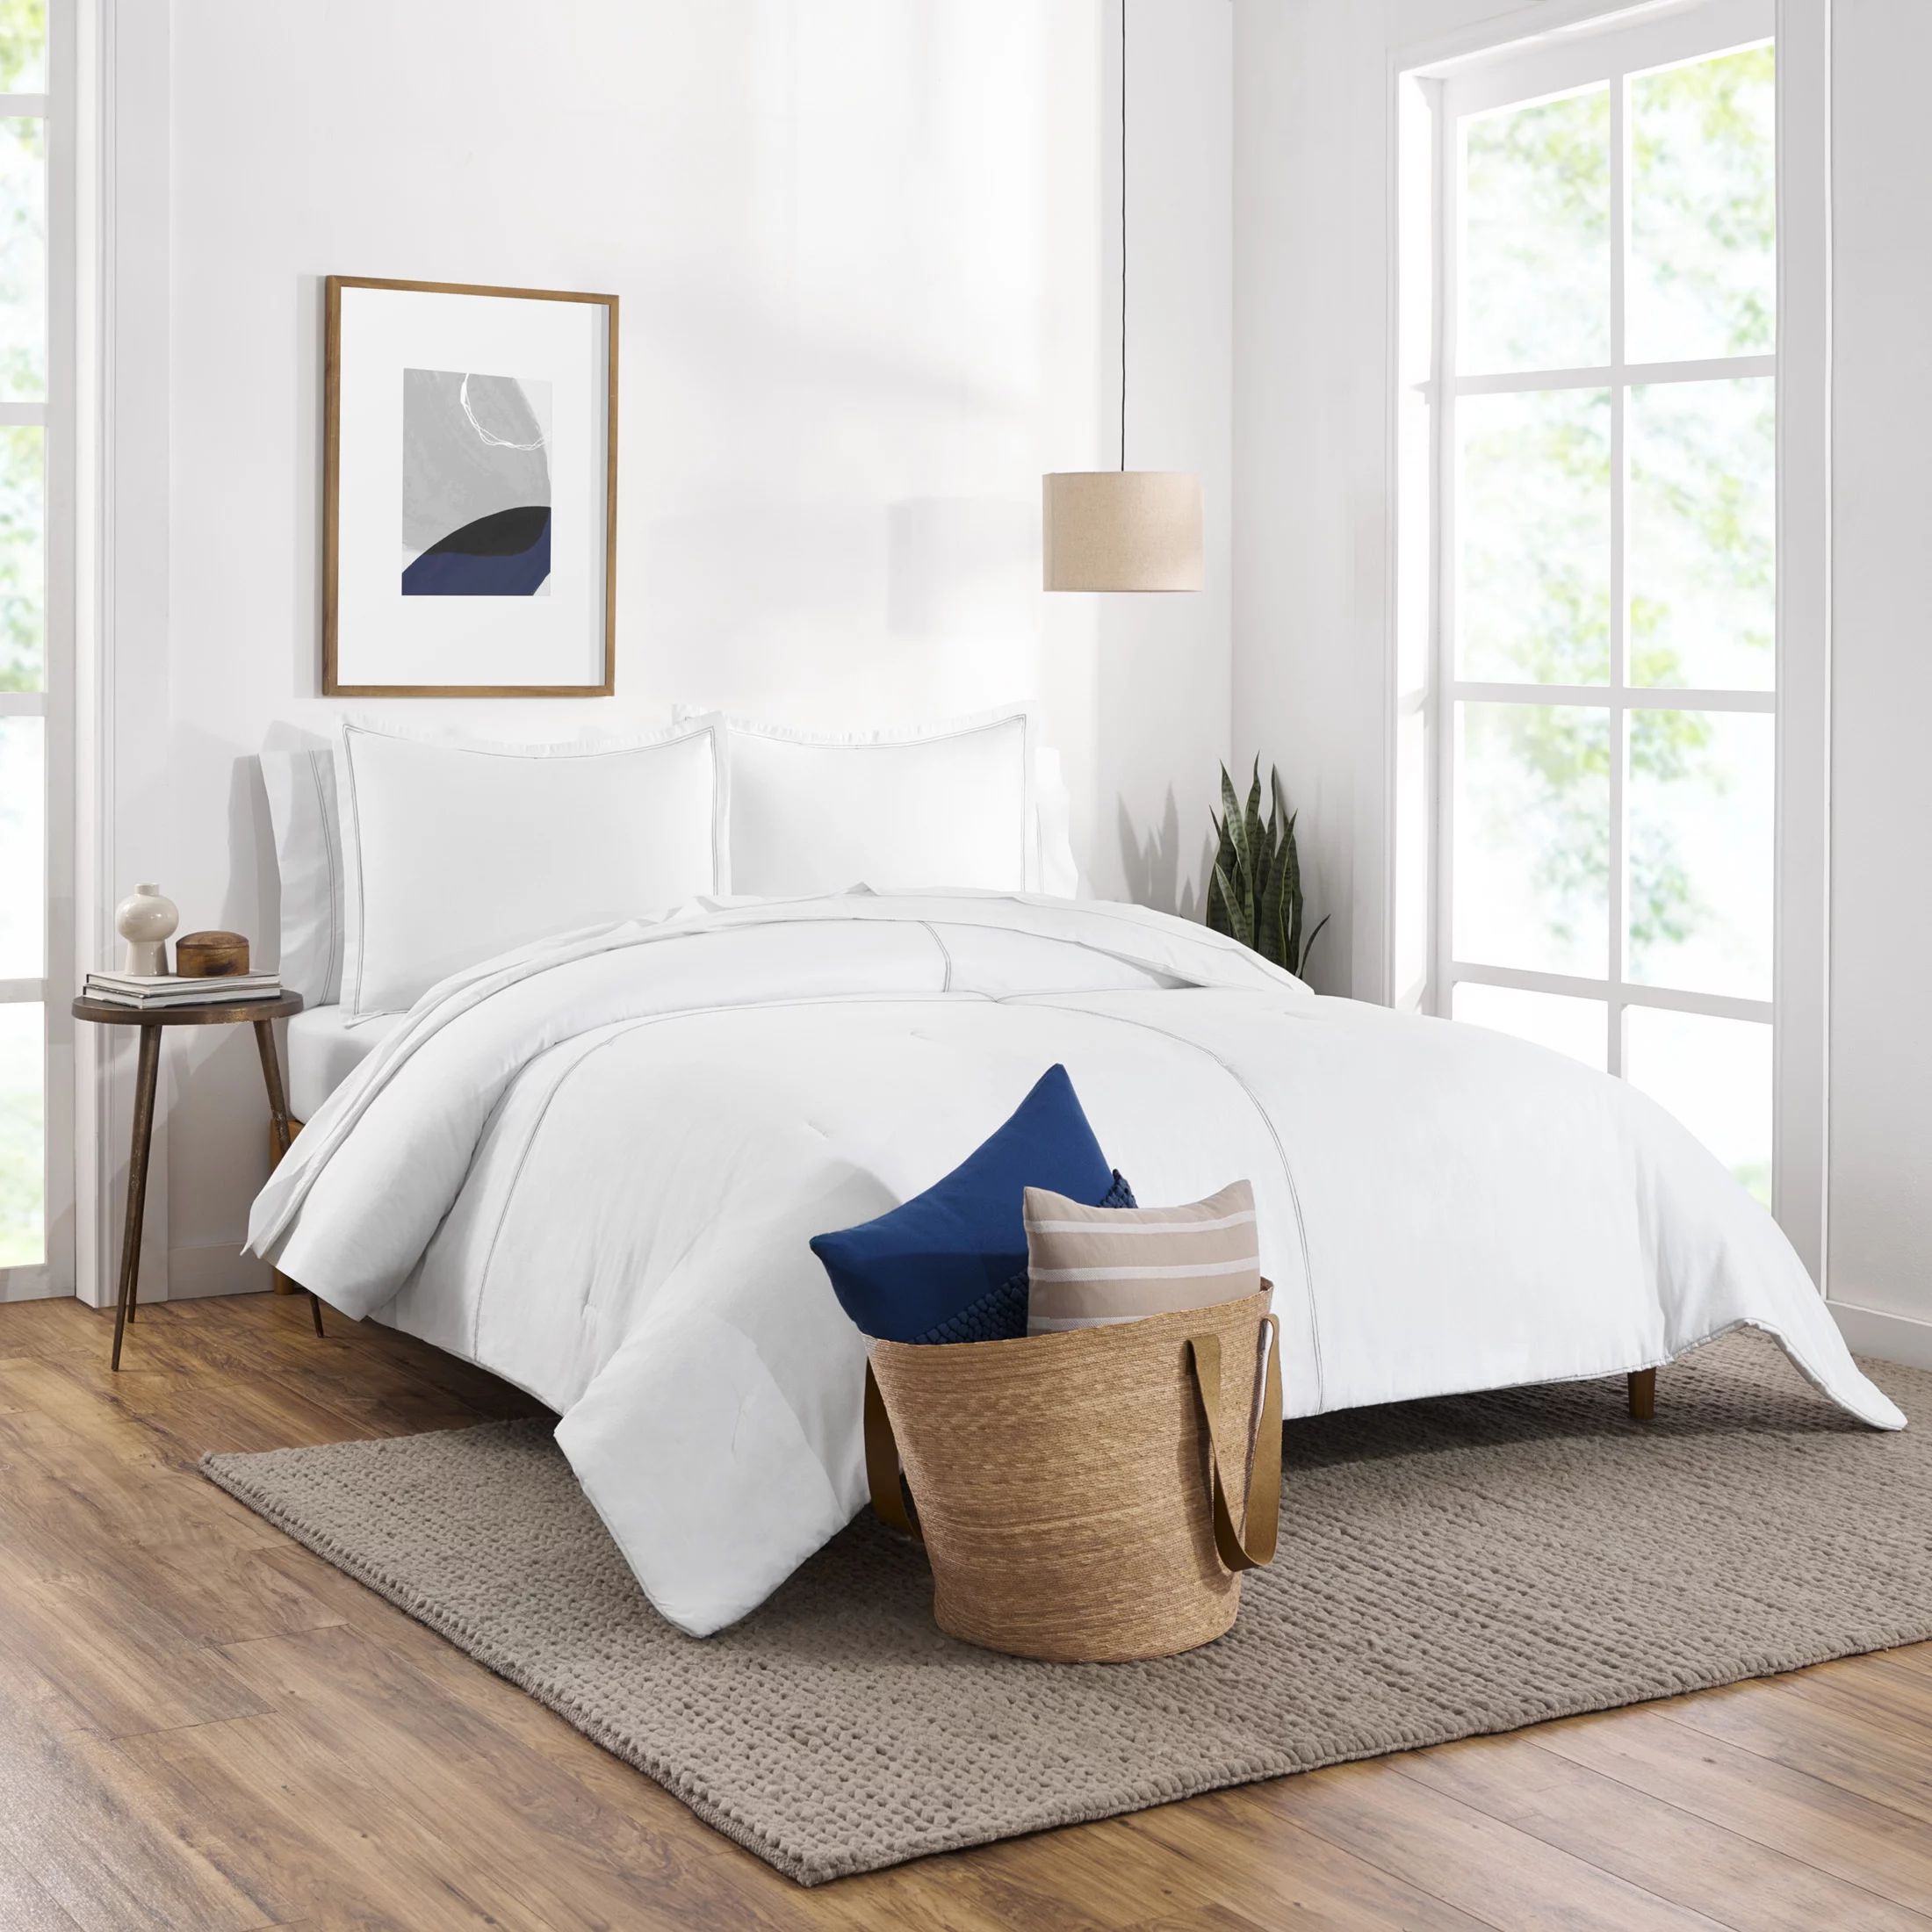 Gap Home Washed Denim Reversible Organic Cotton Comforter Set, King, White, 3-Pieces | Walmart (US)